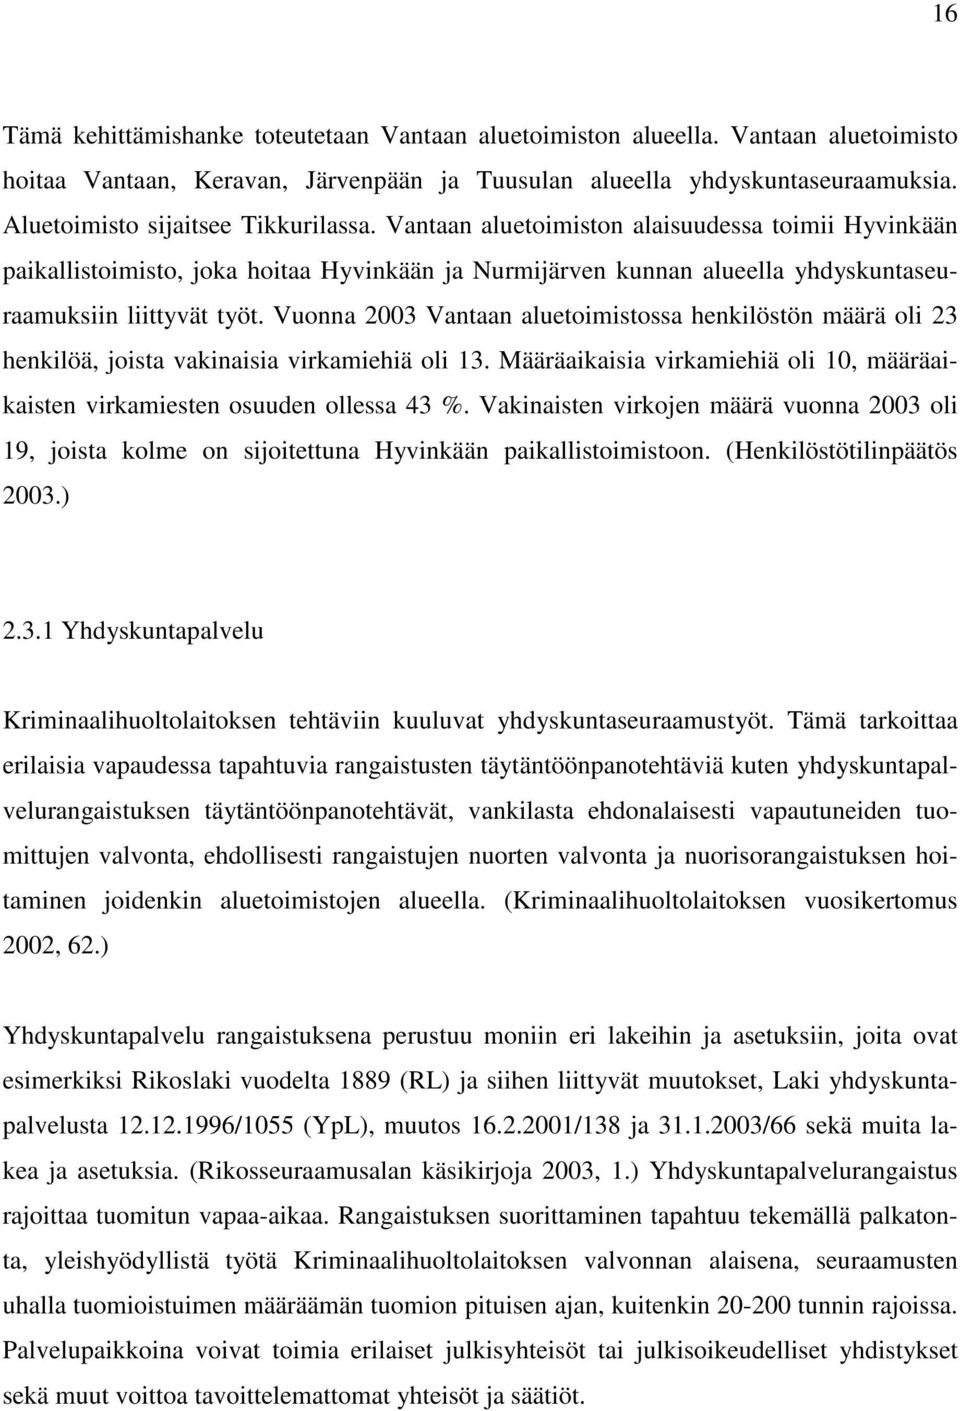 Vuonna 2003 Vantaan aluetoimistossa henkilöstön määrä oli 23 henkilöä, joista vakinaisia virkamiehiä oli 13. Määräaikaisia virkamiehiä oli 10, määräaikaisten virkamiesten osuuden ollessa 43 %.